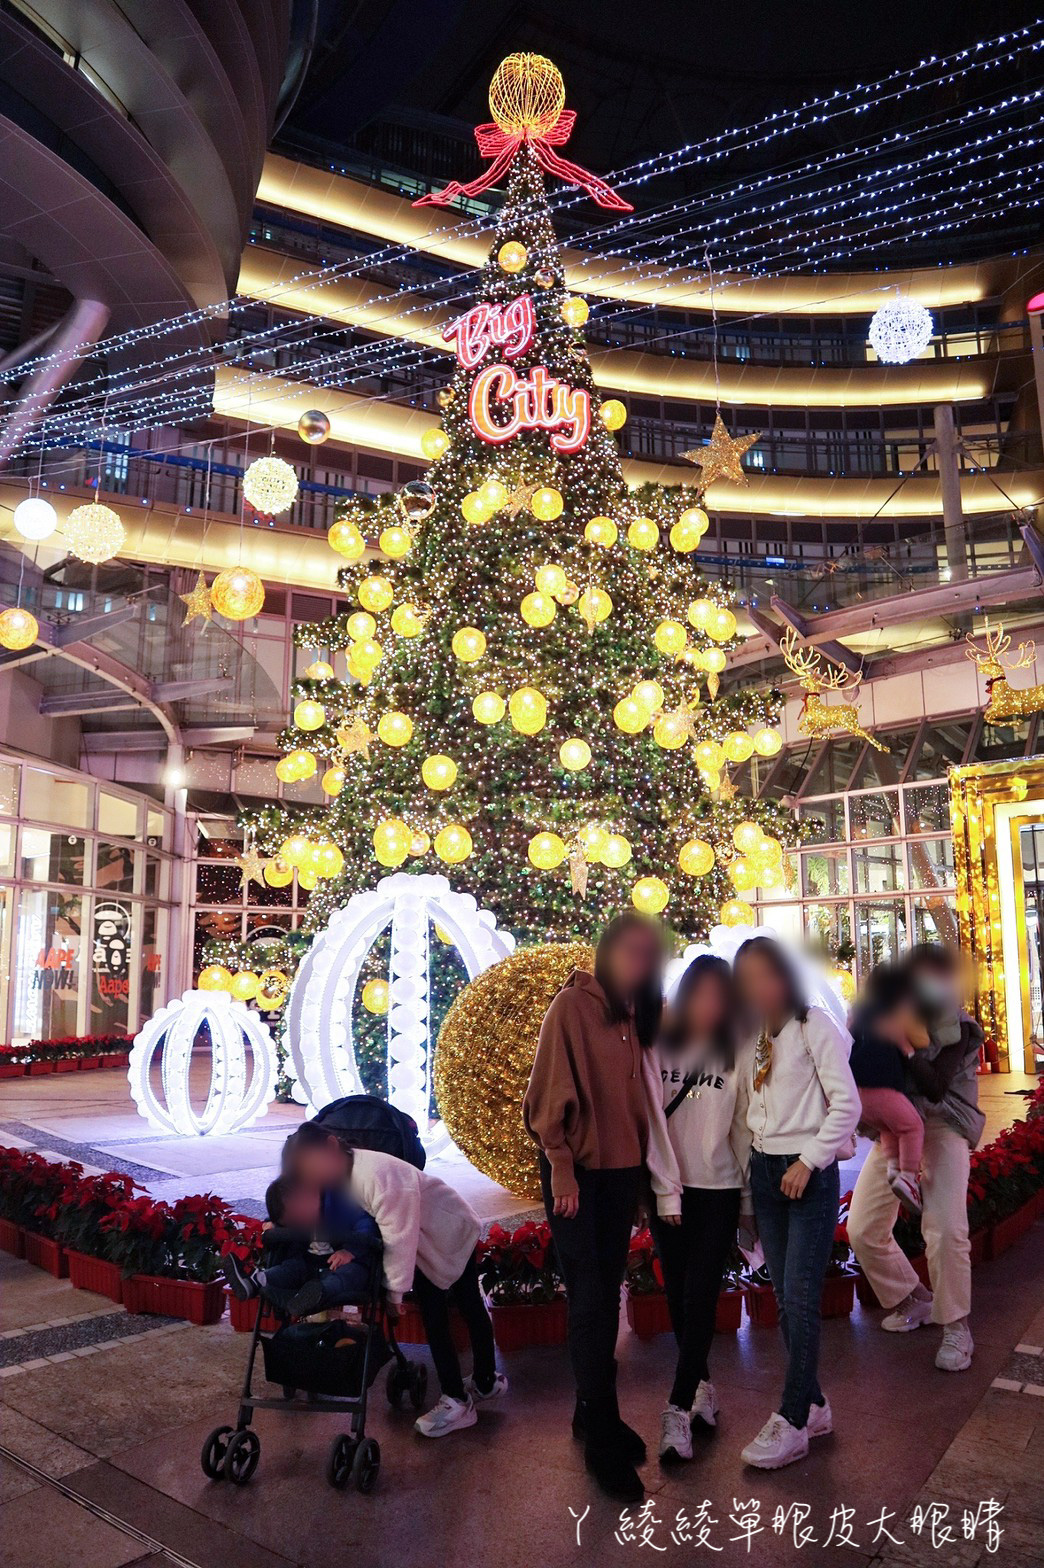 ﻿新竹巨城聖誕樹點燈儀式本週六登場！15米高聖誕樹即將亮起，重溫滿滿的聖誕氛圍